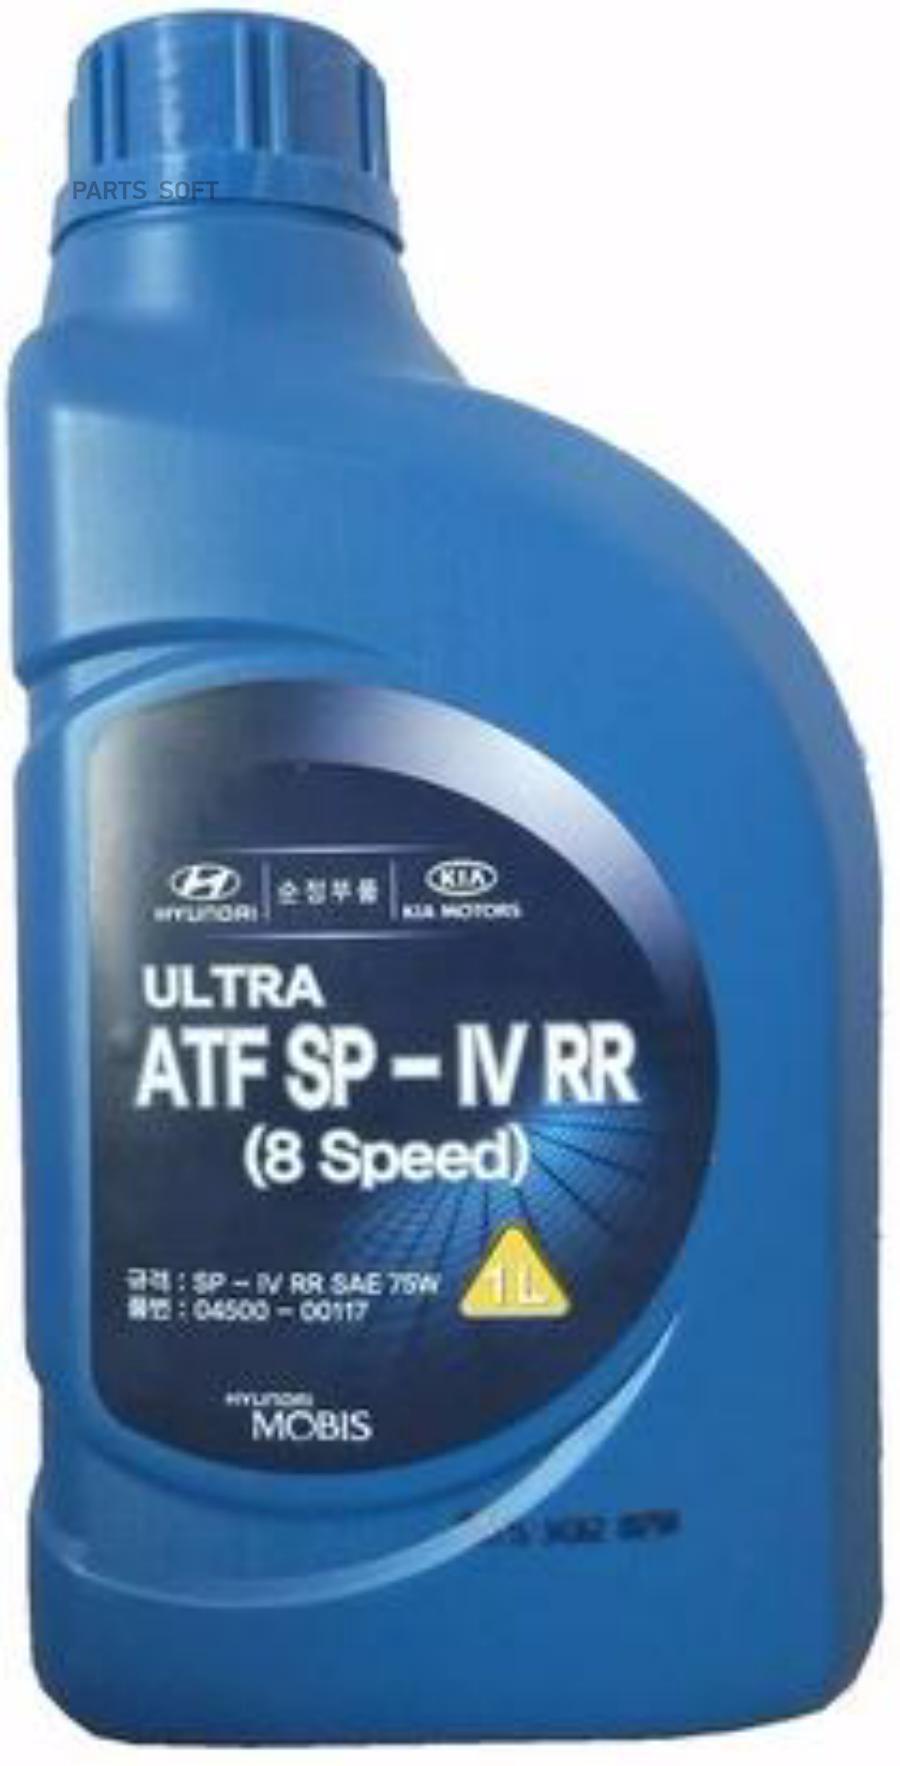 Масло Трансмиссионное (Минеральное) Hyundai Atf Sp-Iv-Rr (8 Speed) (1л) Hyundai-KIA арт. 4